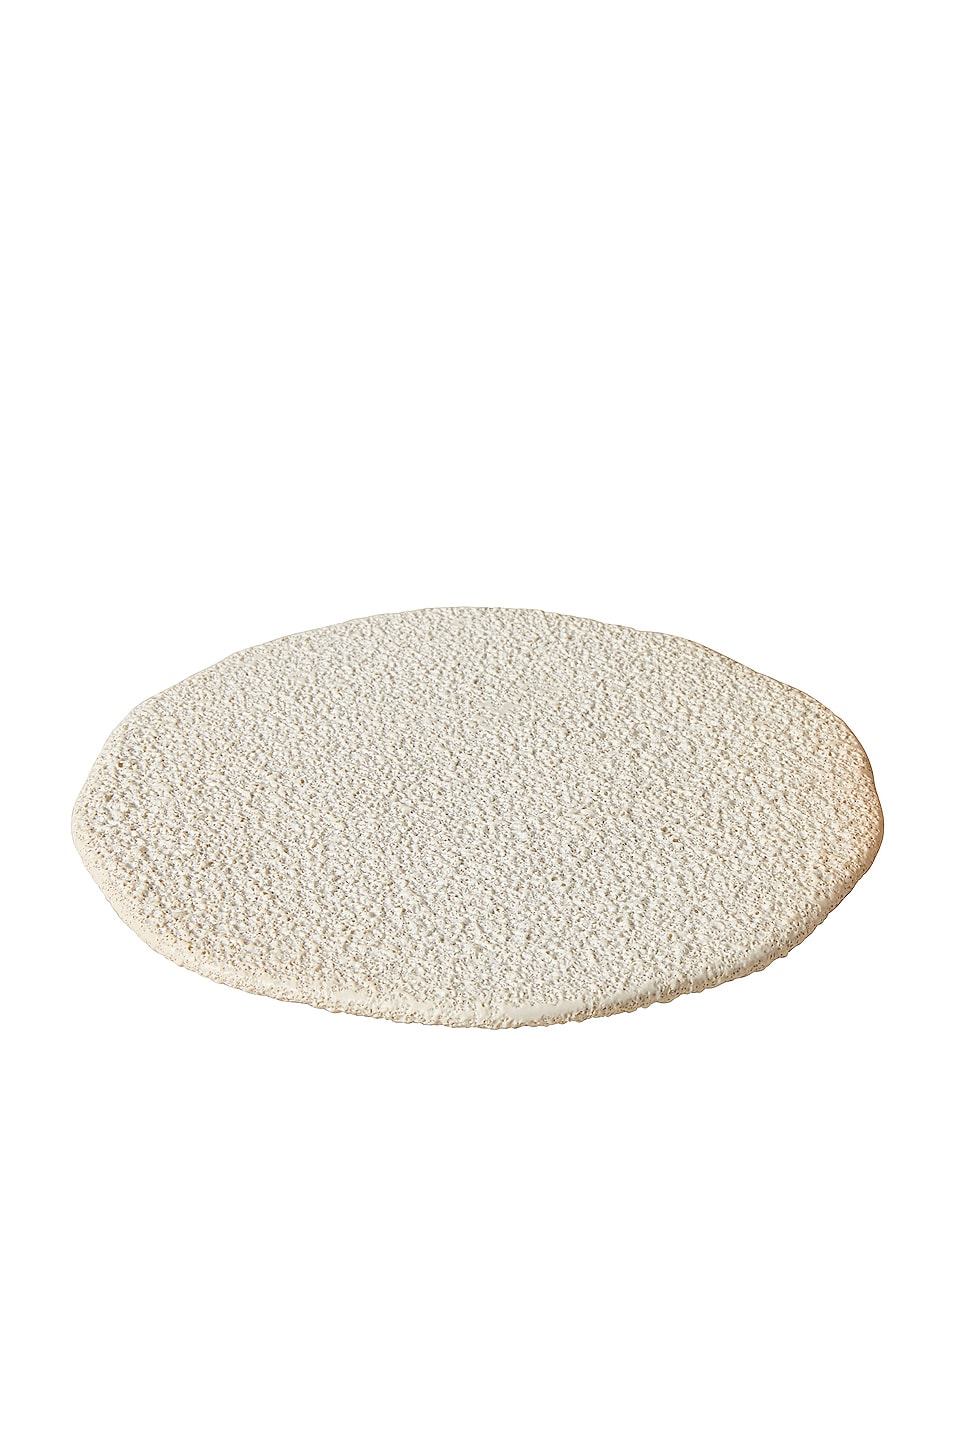 Image 1 of Marloe Marloe Vanity Organic Display Plate in Lava